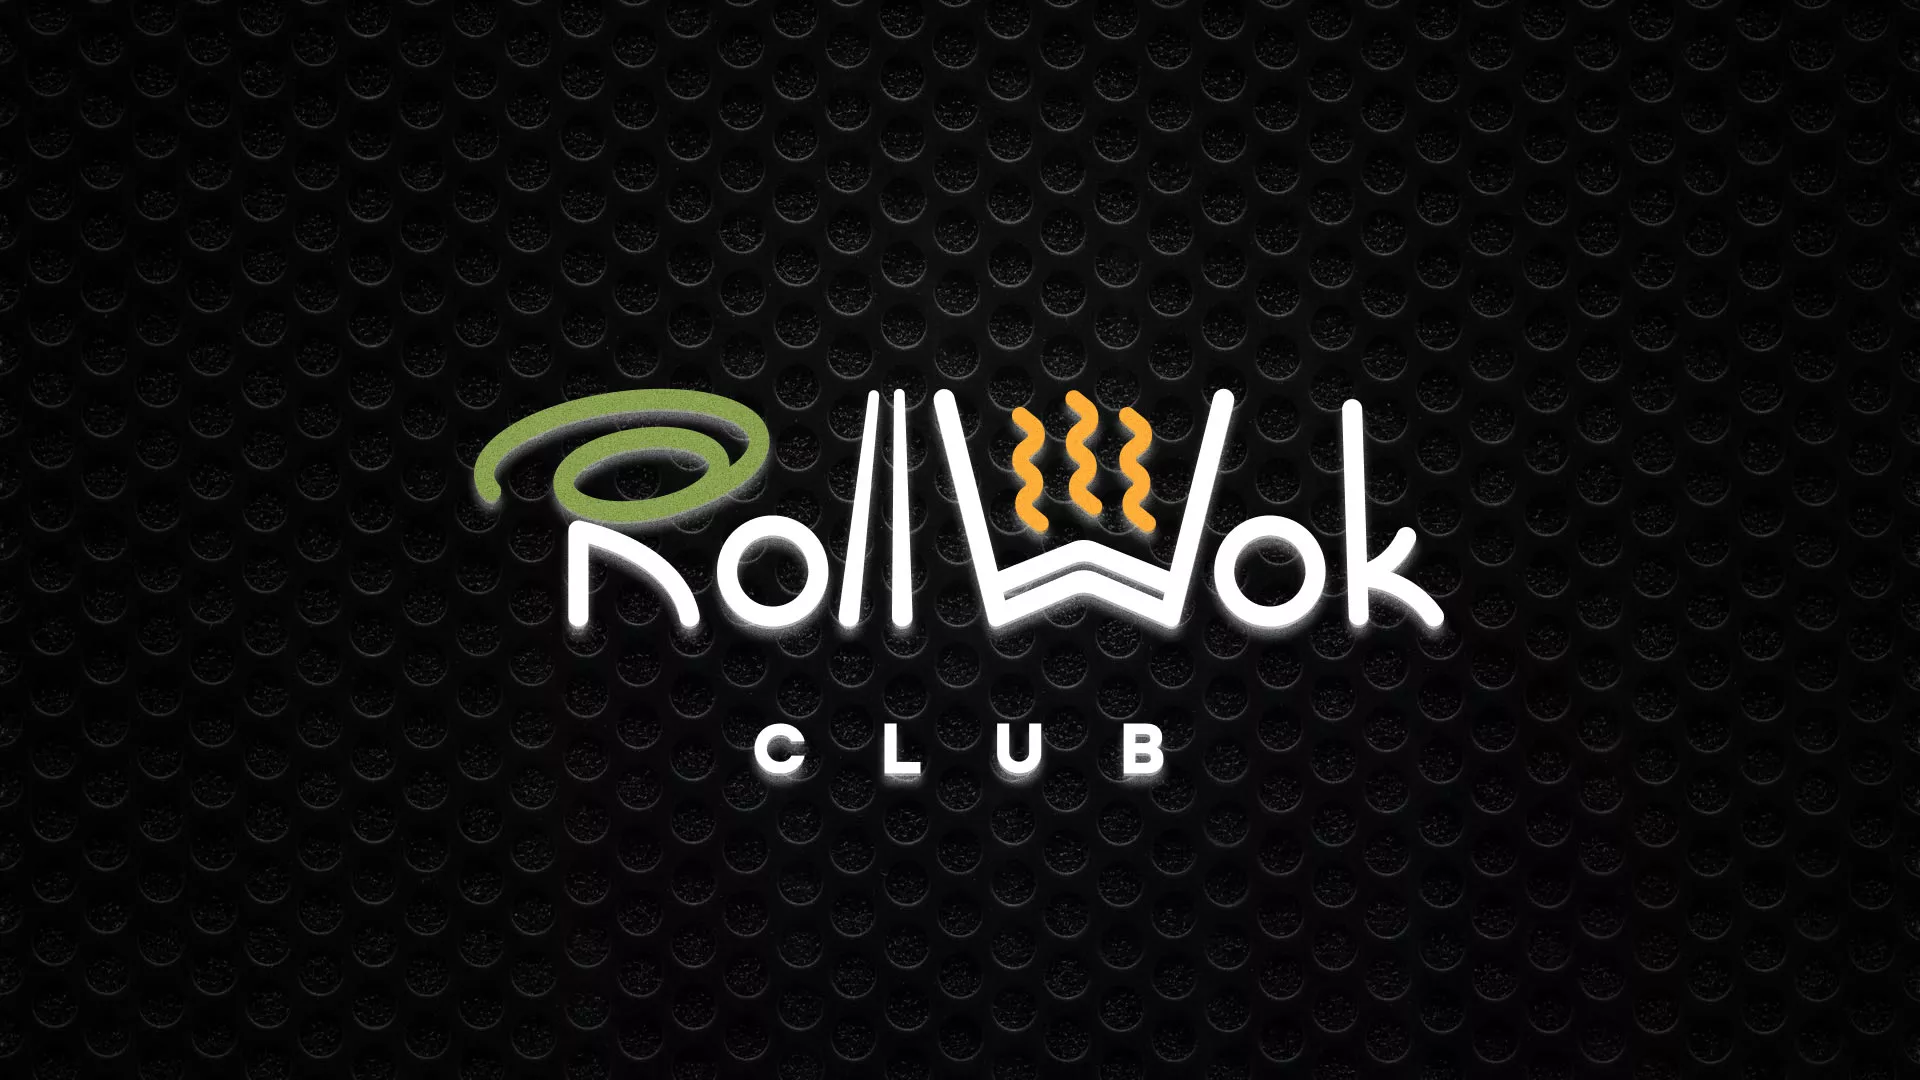 Брендирование торговых точек суши-бара «Roll Wok Club» в Козловке